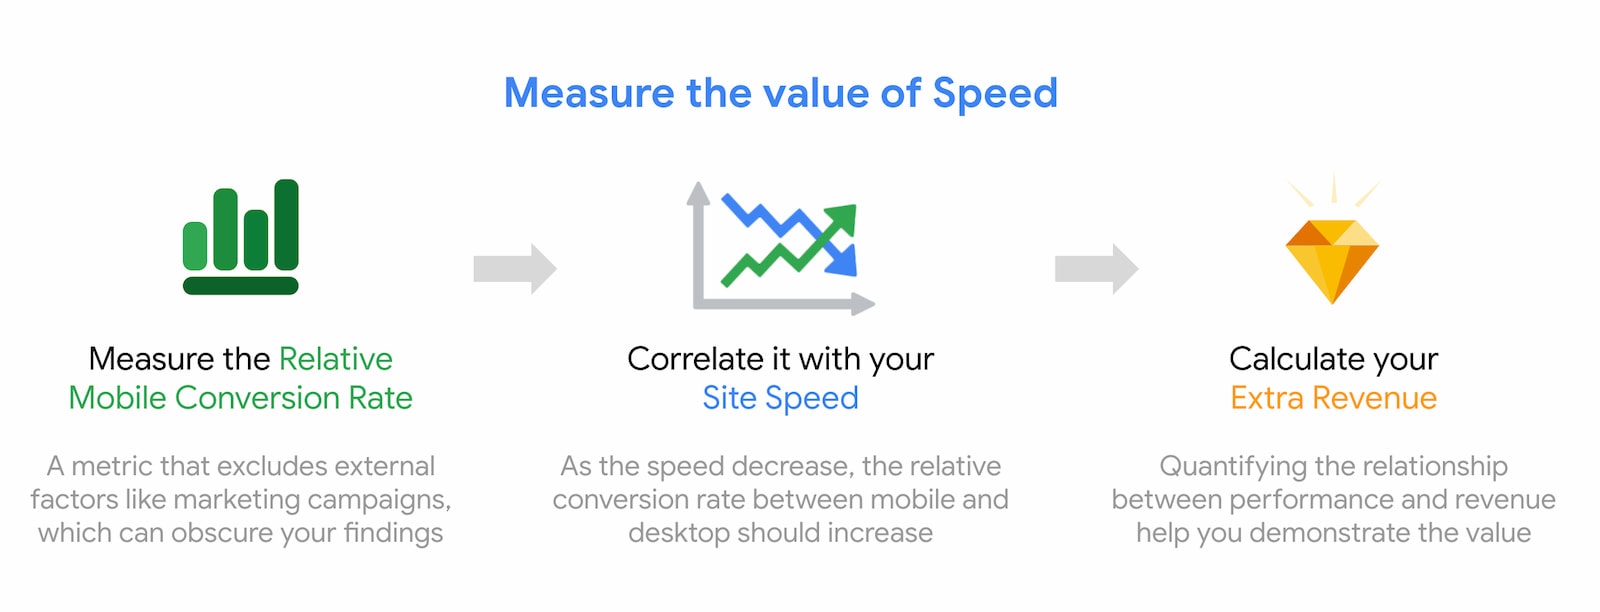 Mide el valor de la velocidad y haz una correlación con las conversiones